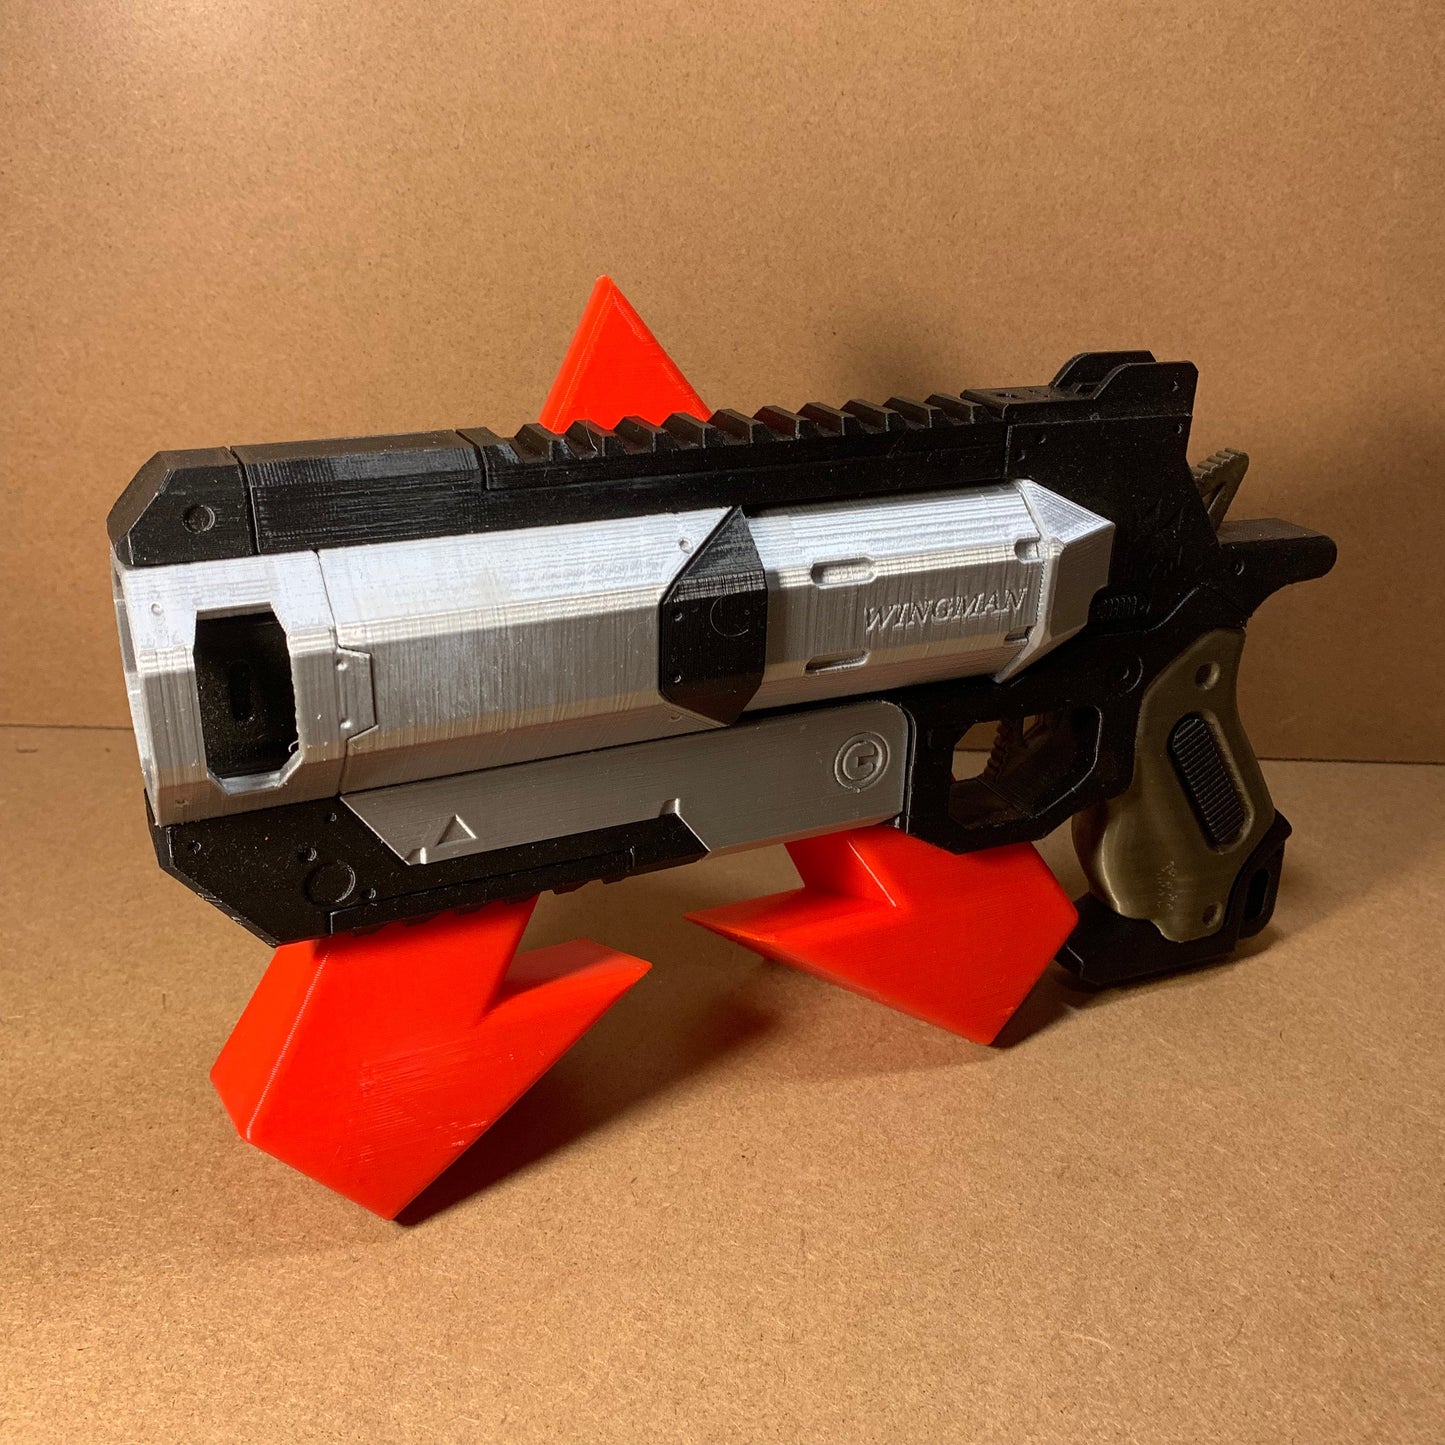 WINGMAN / Apex Legend Style Pistol / FULL SIZE / Replica Blaster / Actual 1:1 Scale Pistol Handgun Cosplay / Gamer Gift Prop Gun